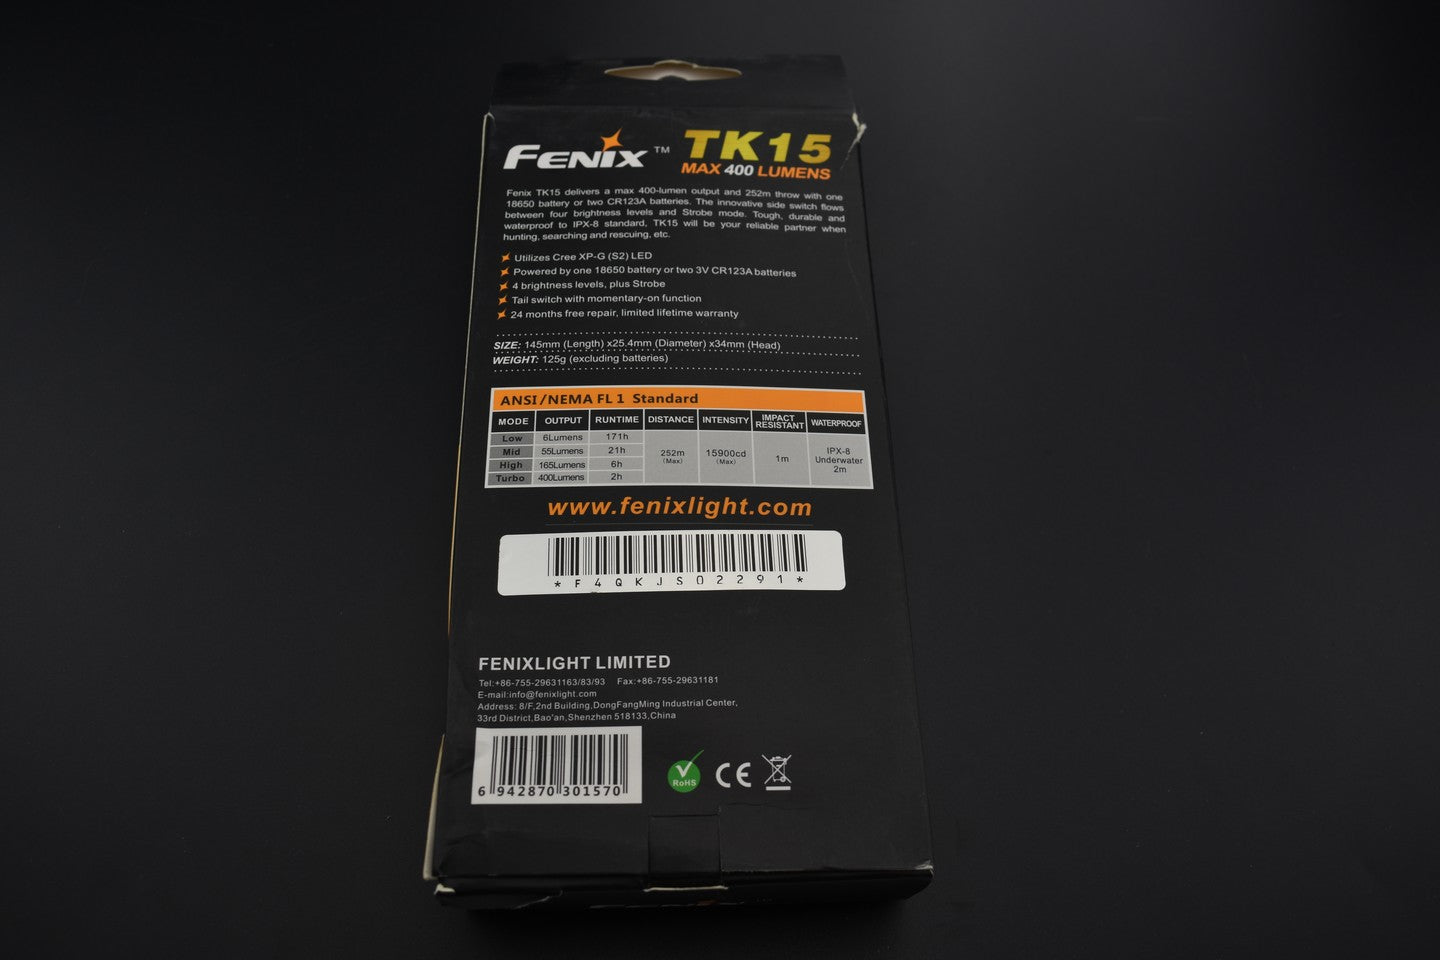 Fenix occasion - OCF219 TK15 - Revendeur Officiel Lampes FENIX depuis 2008 | Votre Boutique en ligne FENIX®